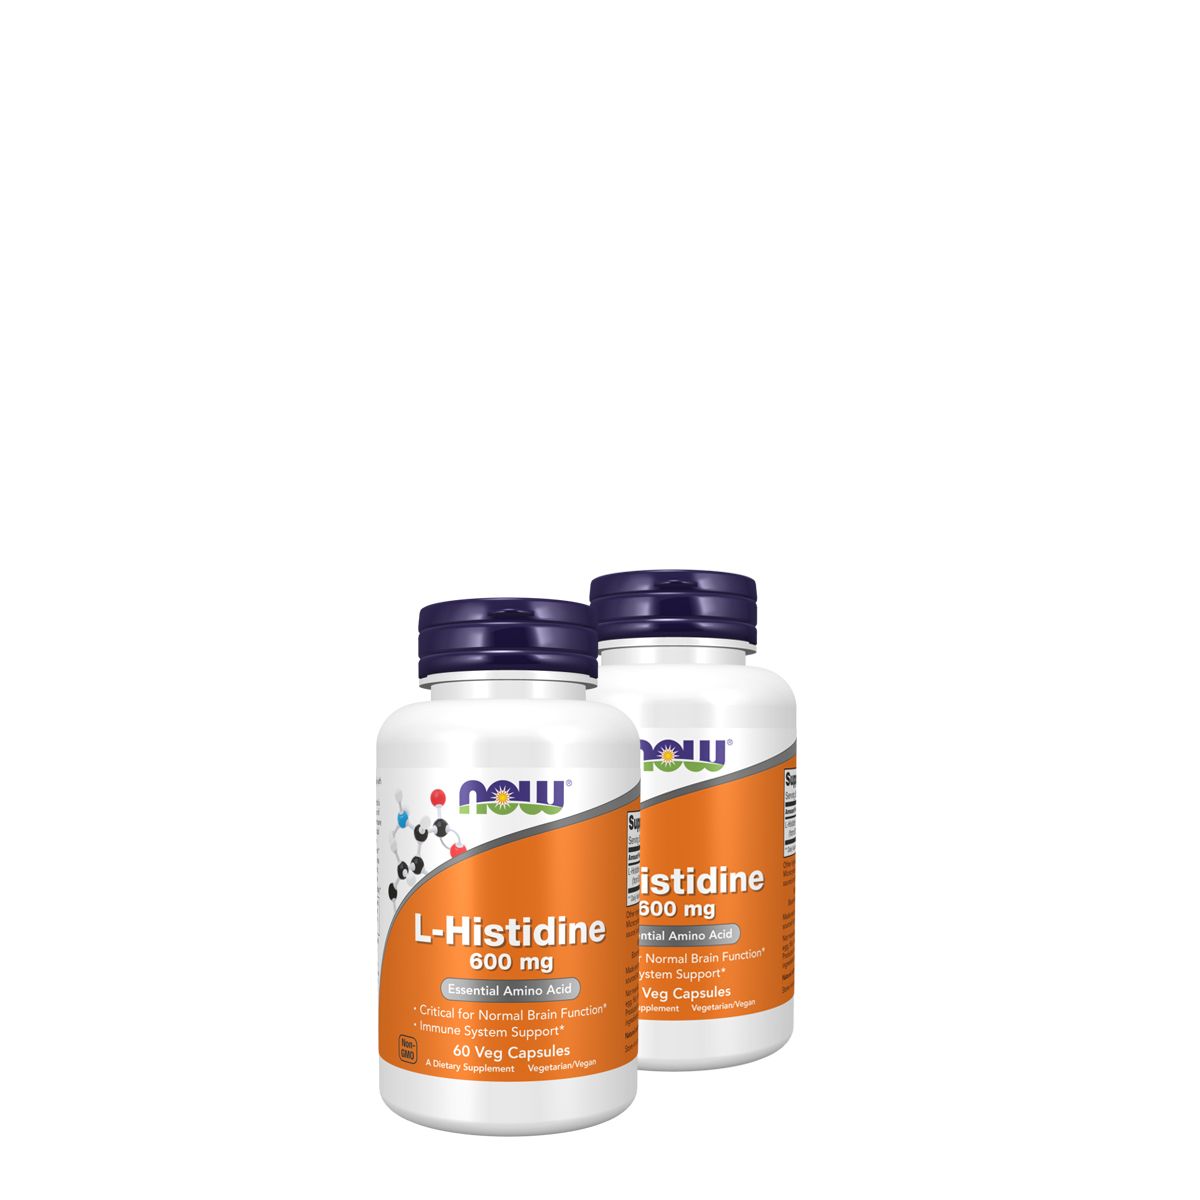 L-hisztidin 600 mg, Now L-Histidine, 2x60 kapszula